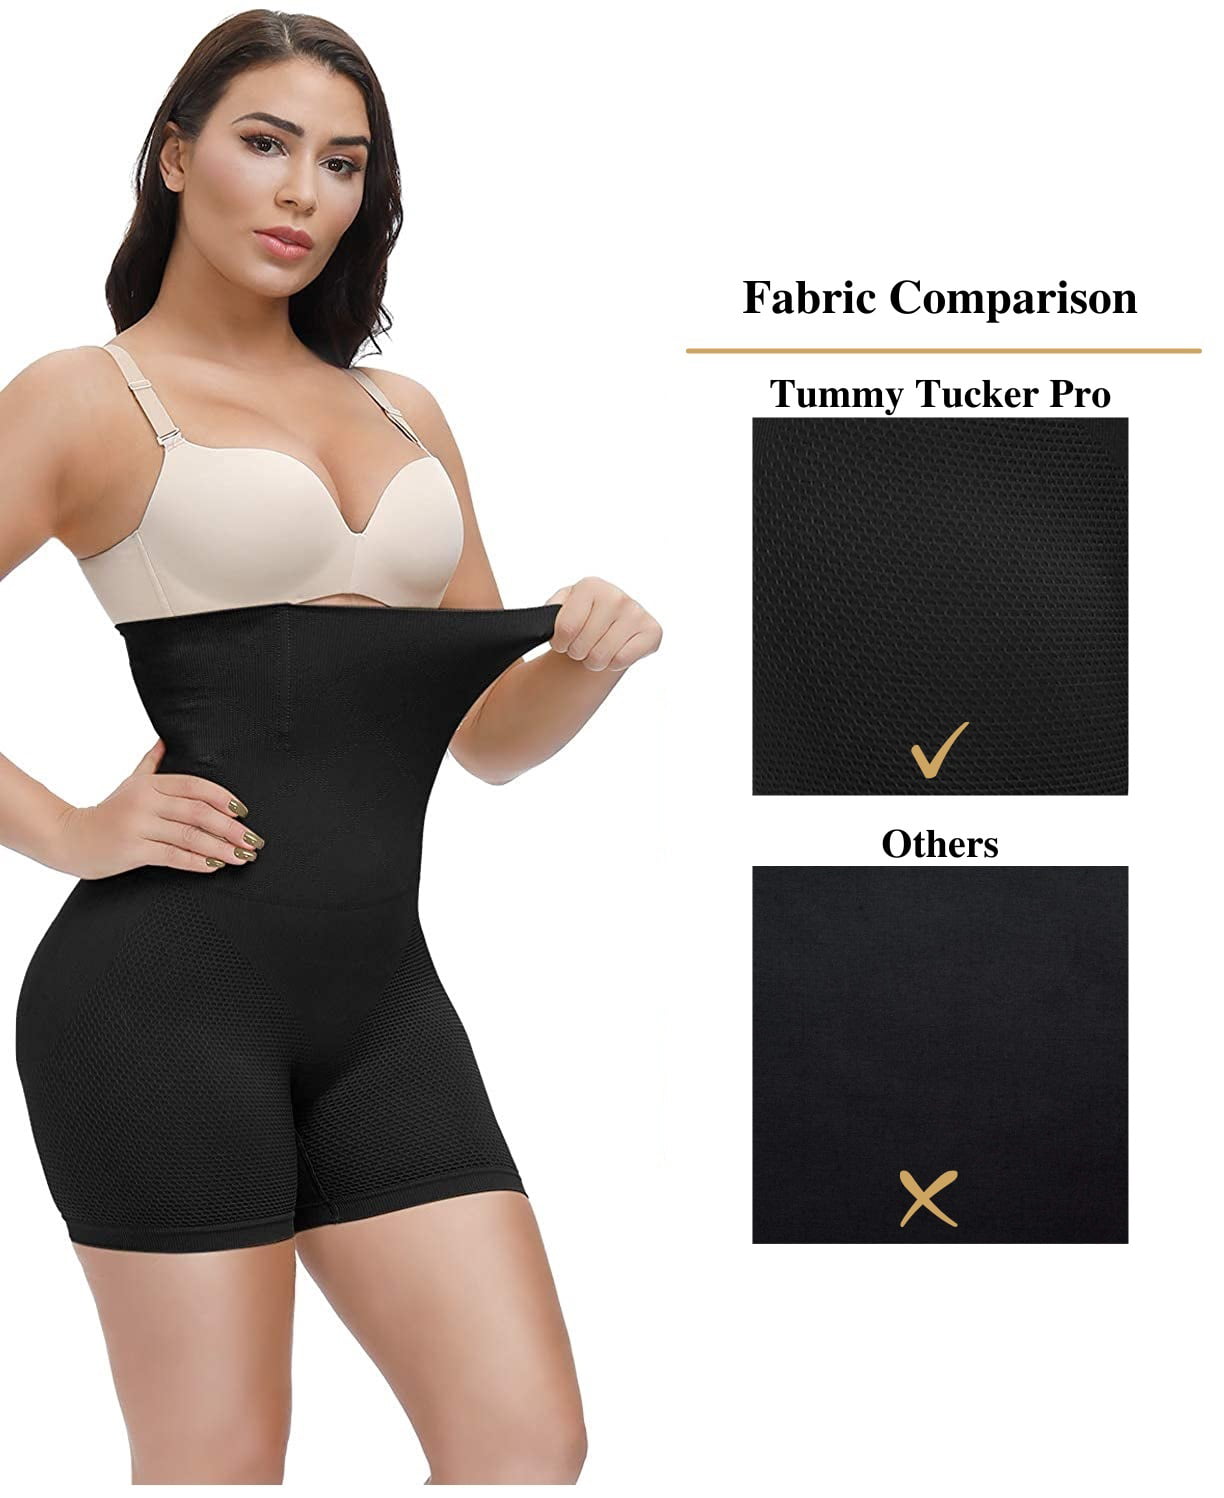  Fashion Wear Women High Waist Tummy Tucker Stretchable